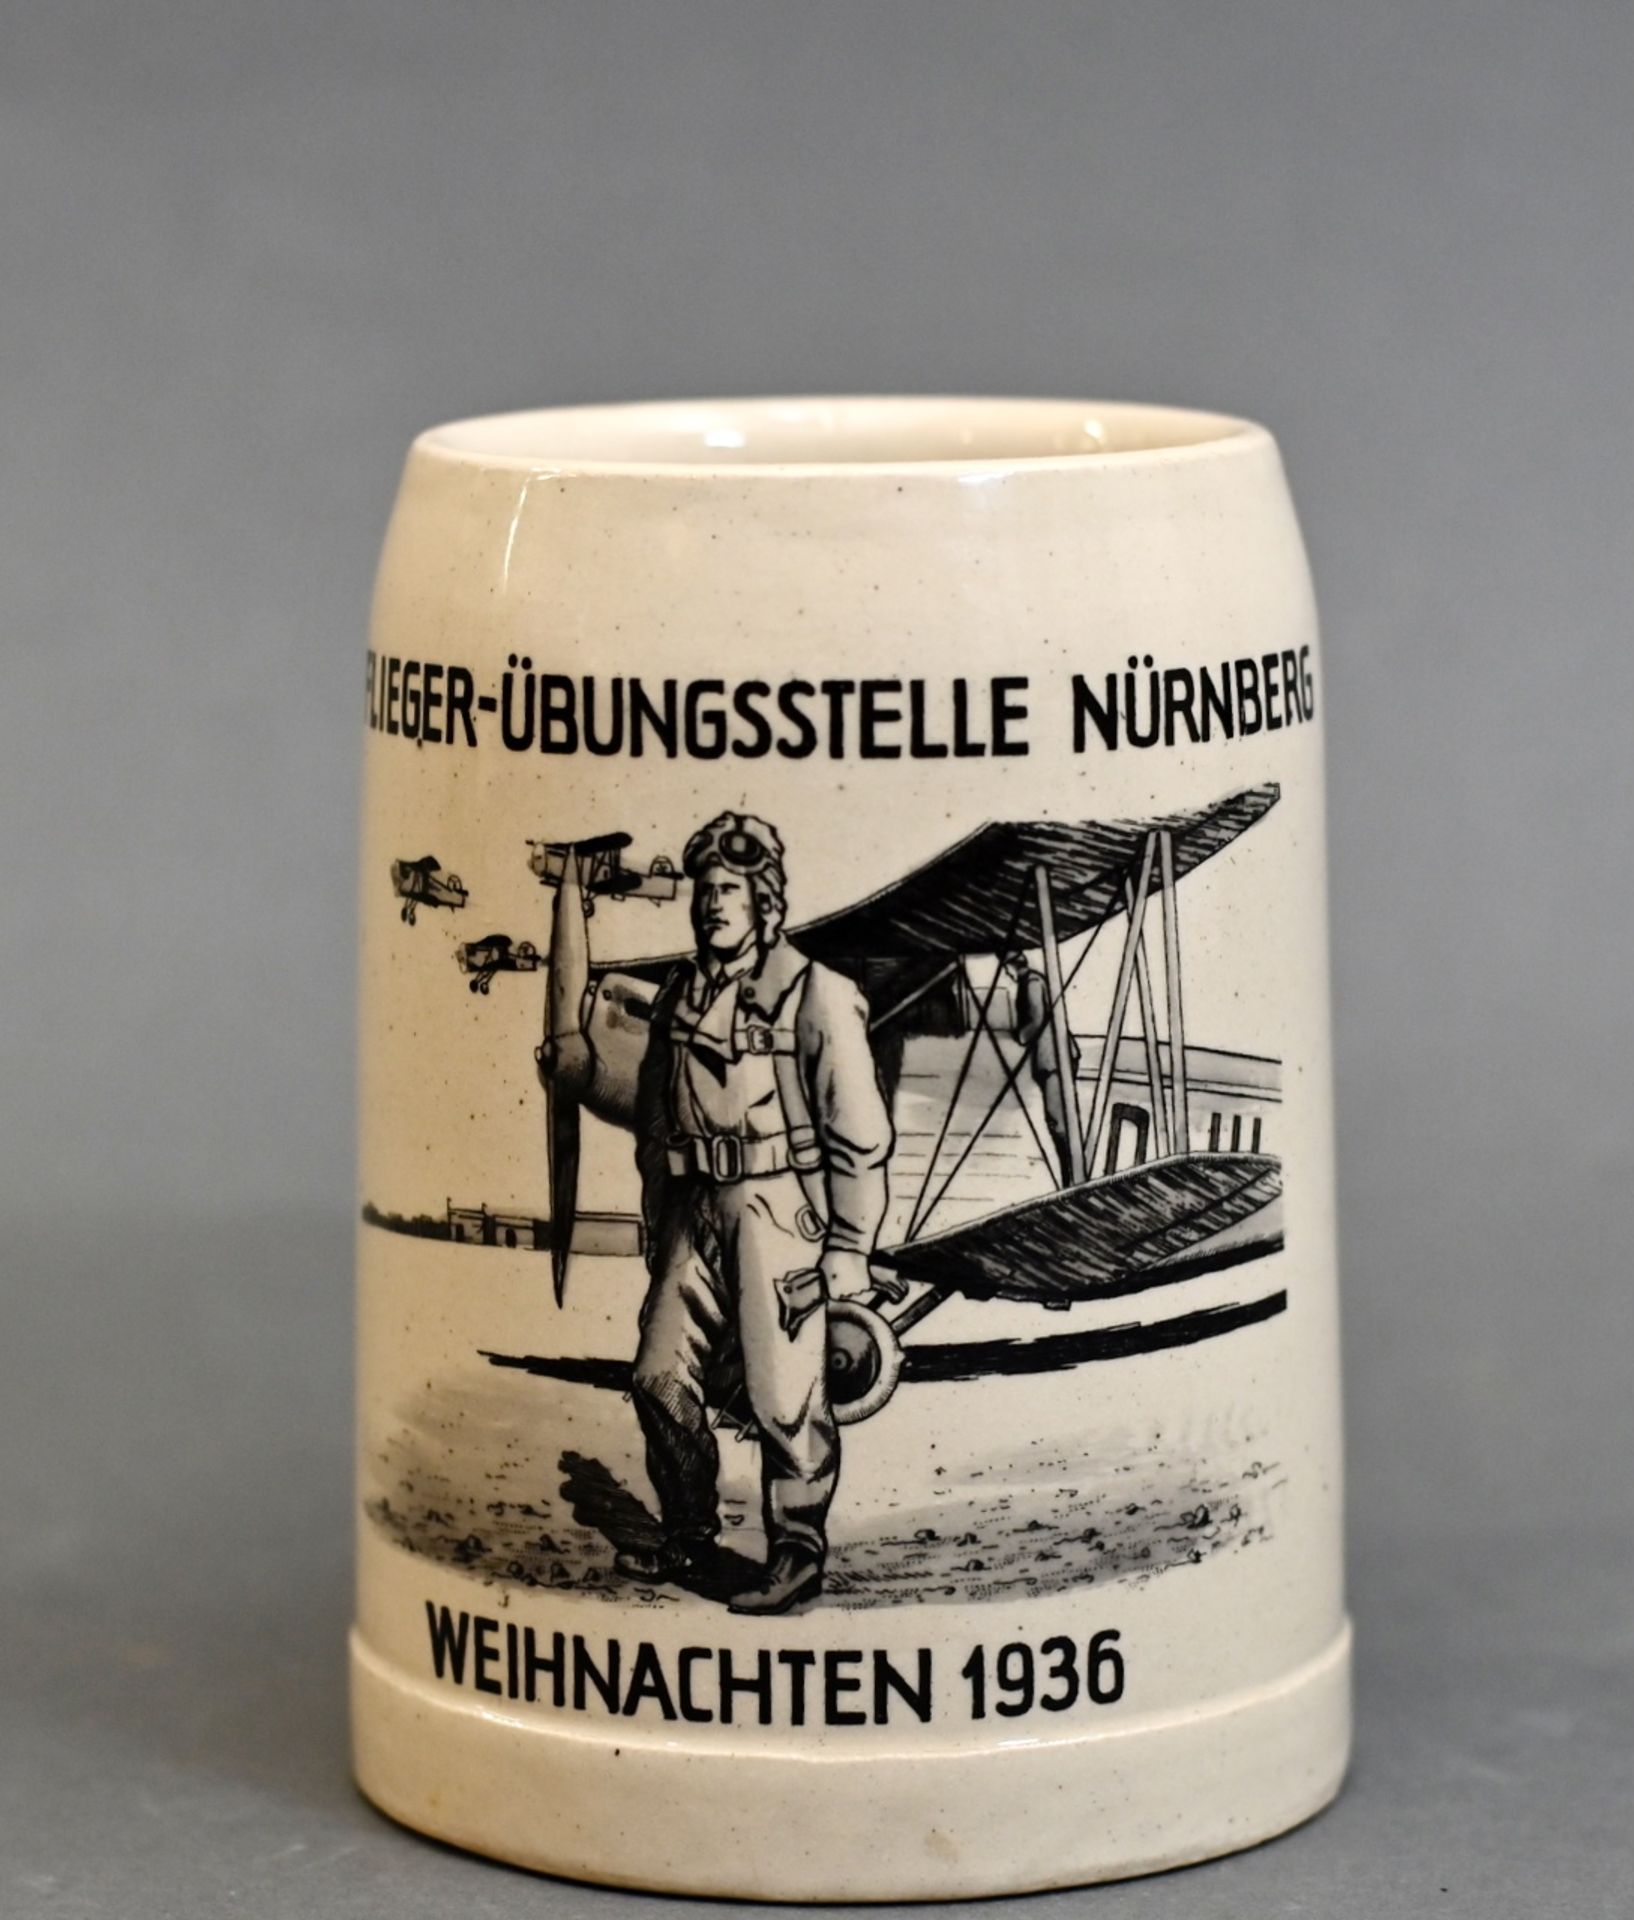 Bierkrug Flieger-Übungsstelle Nürnberg, Weihnachten 1936, 0,5 L, Schauseitig mit Flugzeug und